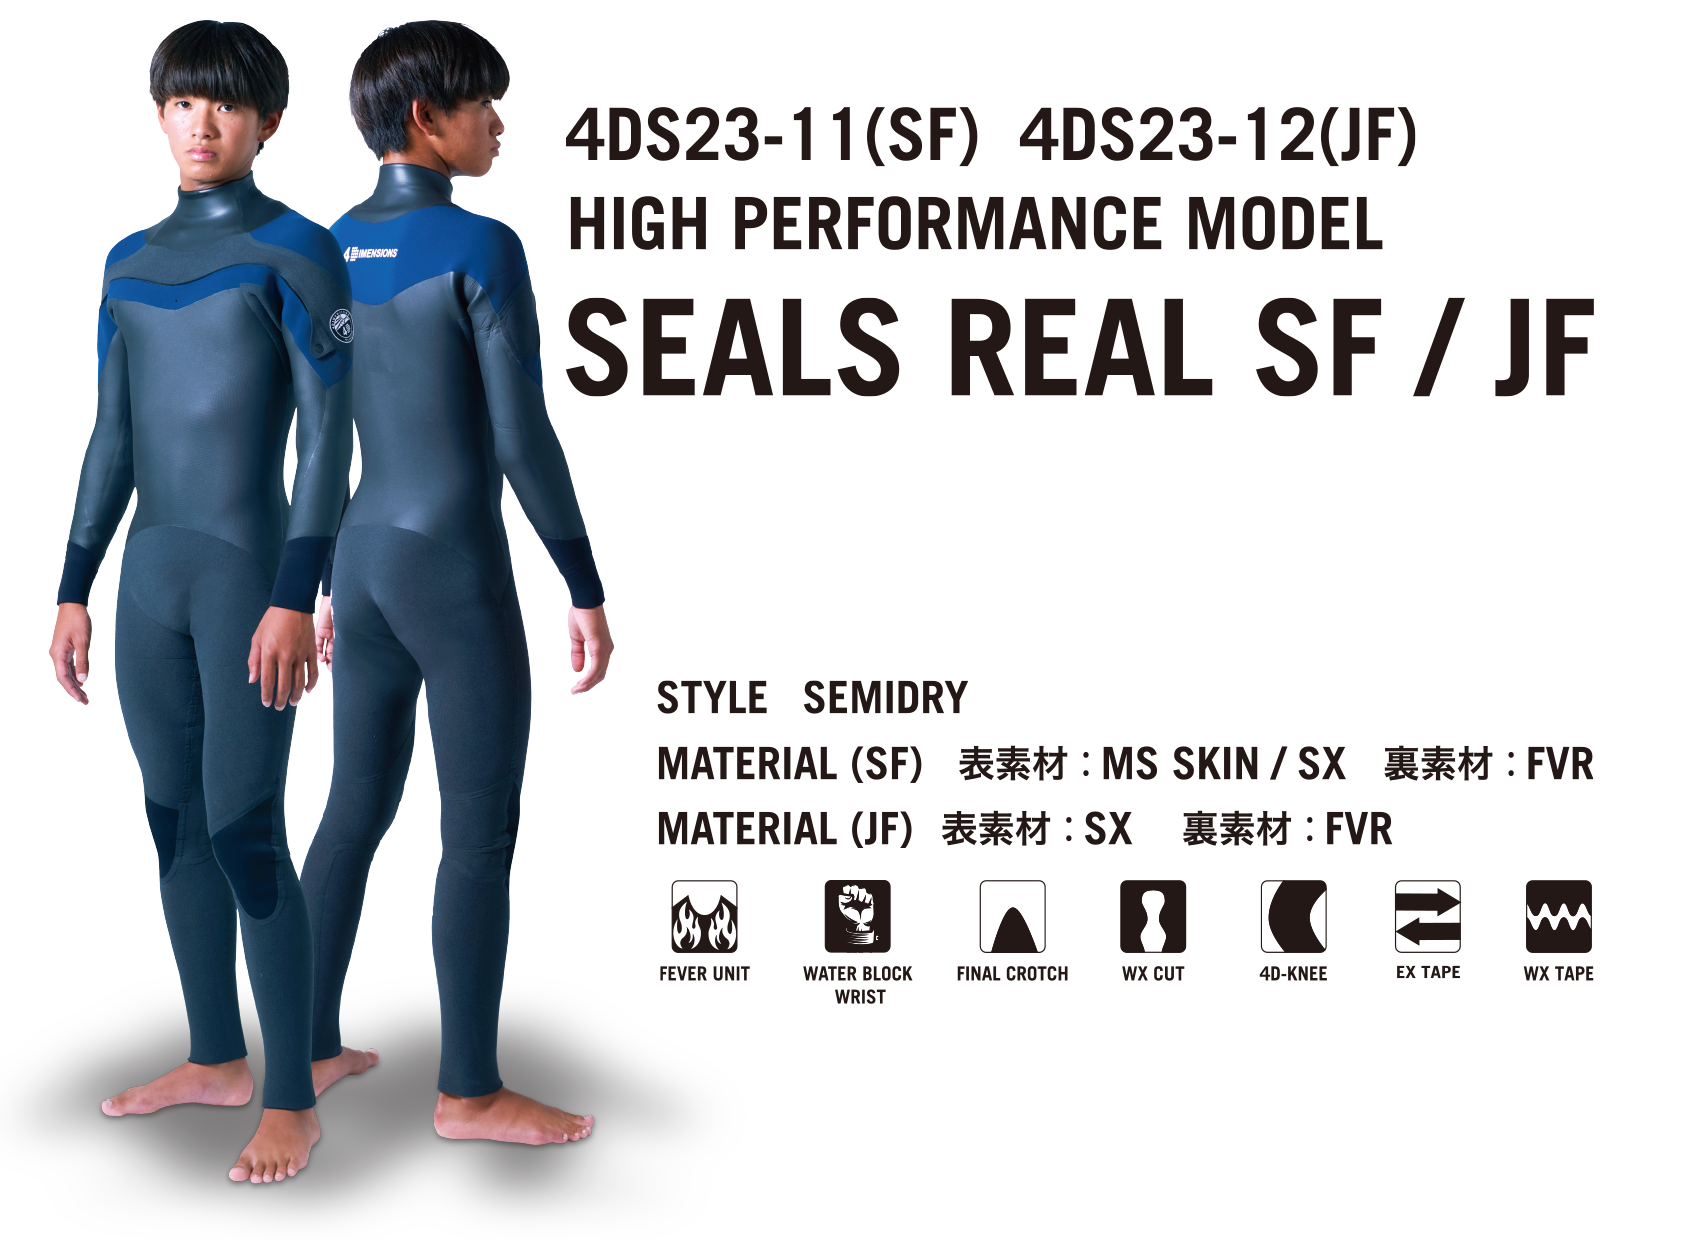 SEALS REAL SF/JF